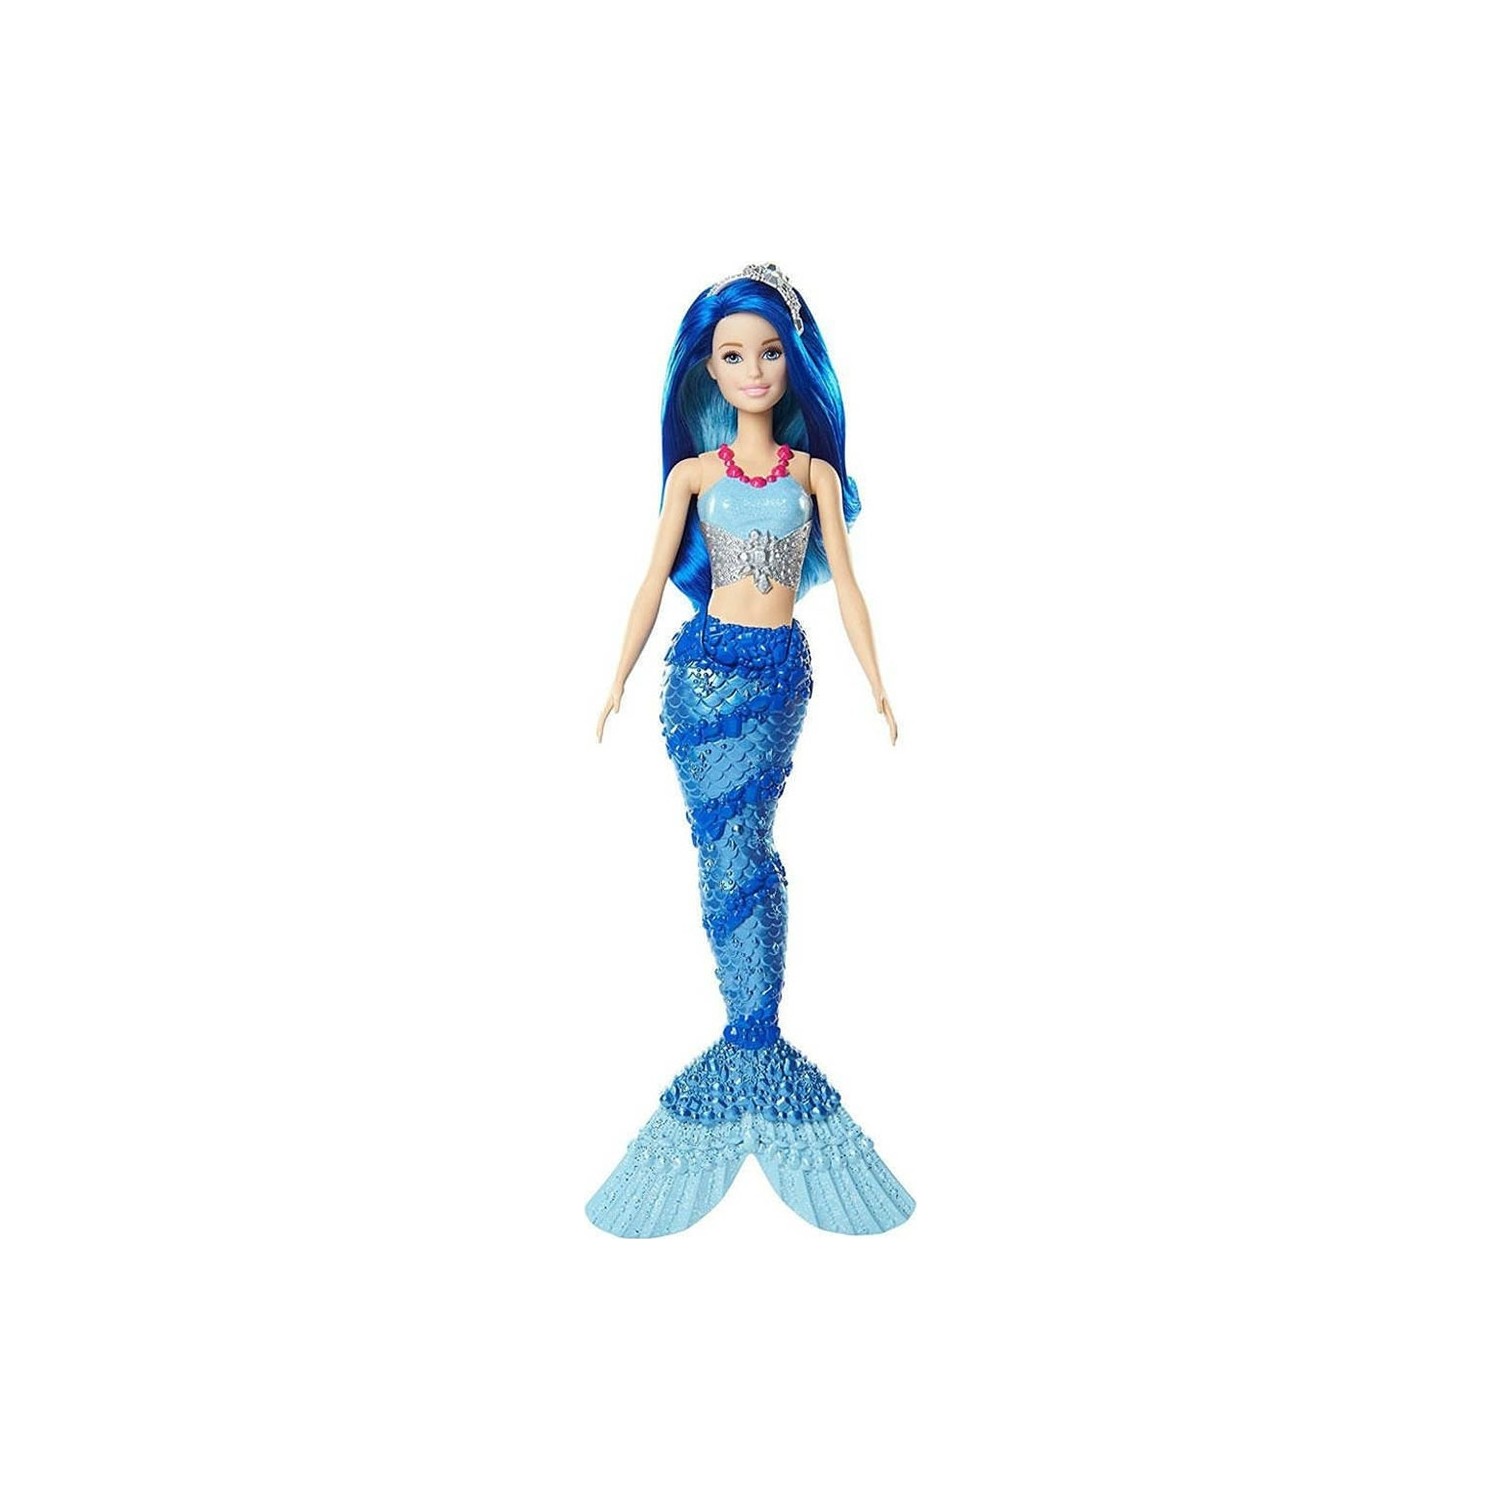 Кукла Barbie Dreamtopia Mermaid FJC92 кукла barbie dreamtopia mermaid fjc89